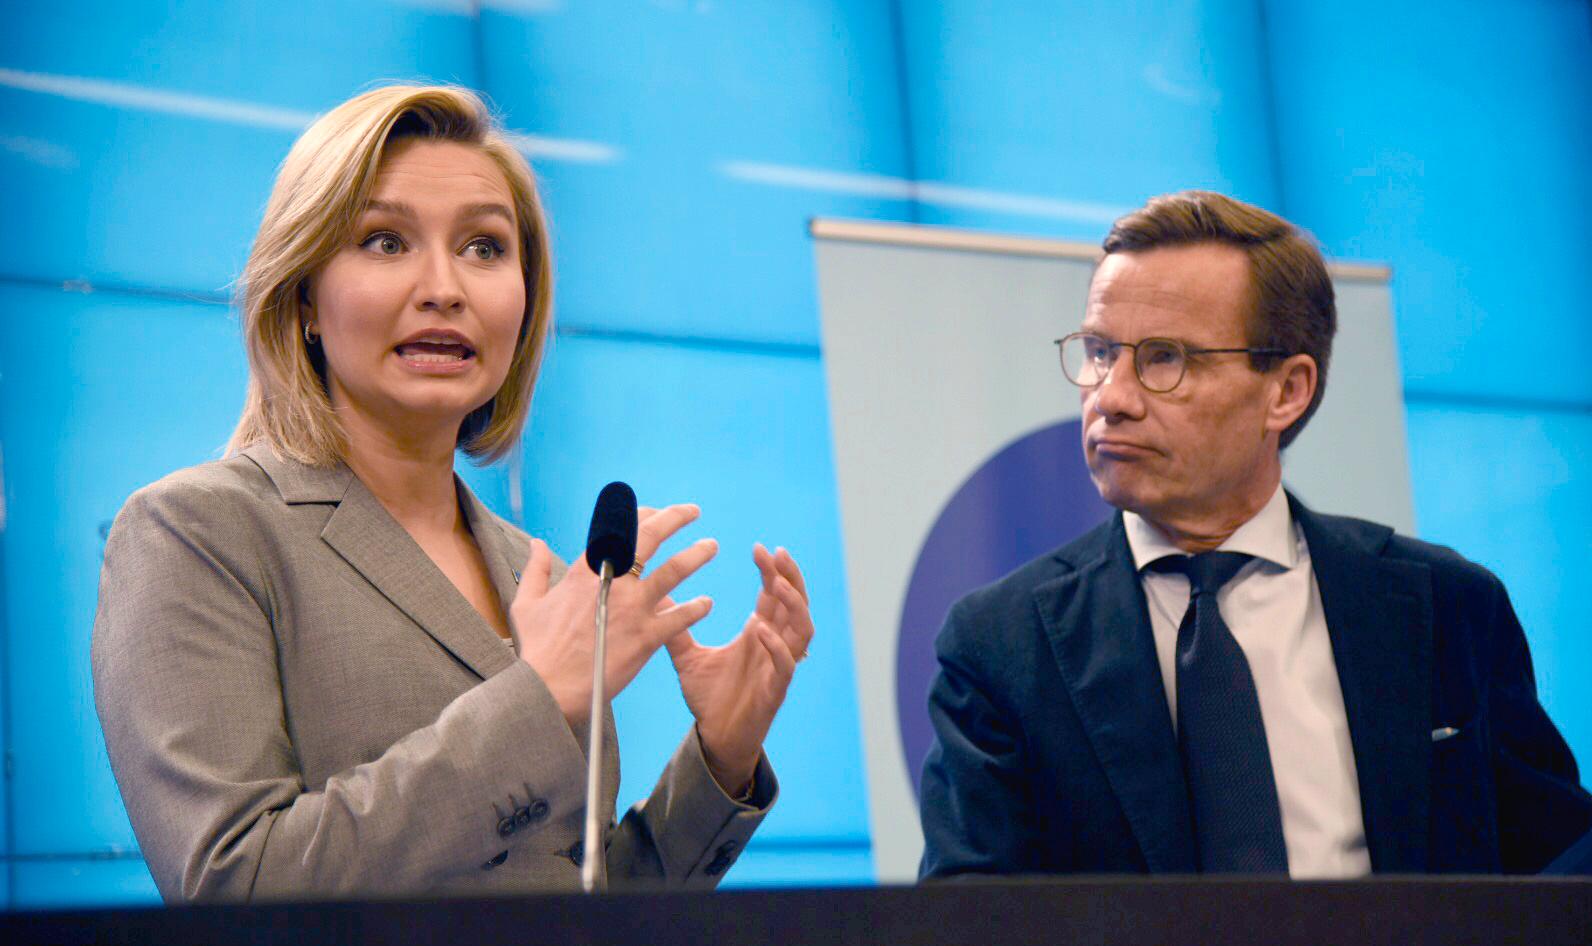 Kristdemokraternas partiledare Ebba Busch Thor (KD) och Moderaternas partiledare Ulf Kristersson (M) vill uppdatera energiöverenskommelsen.